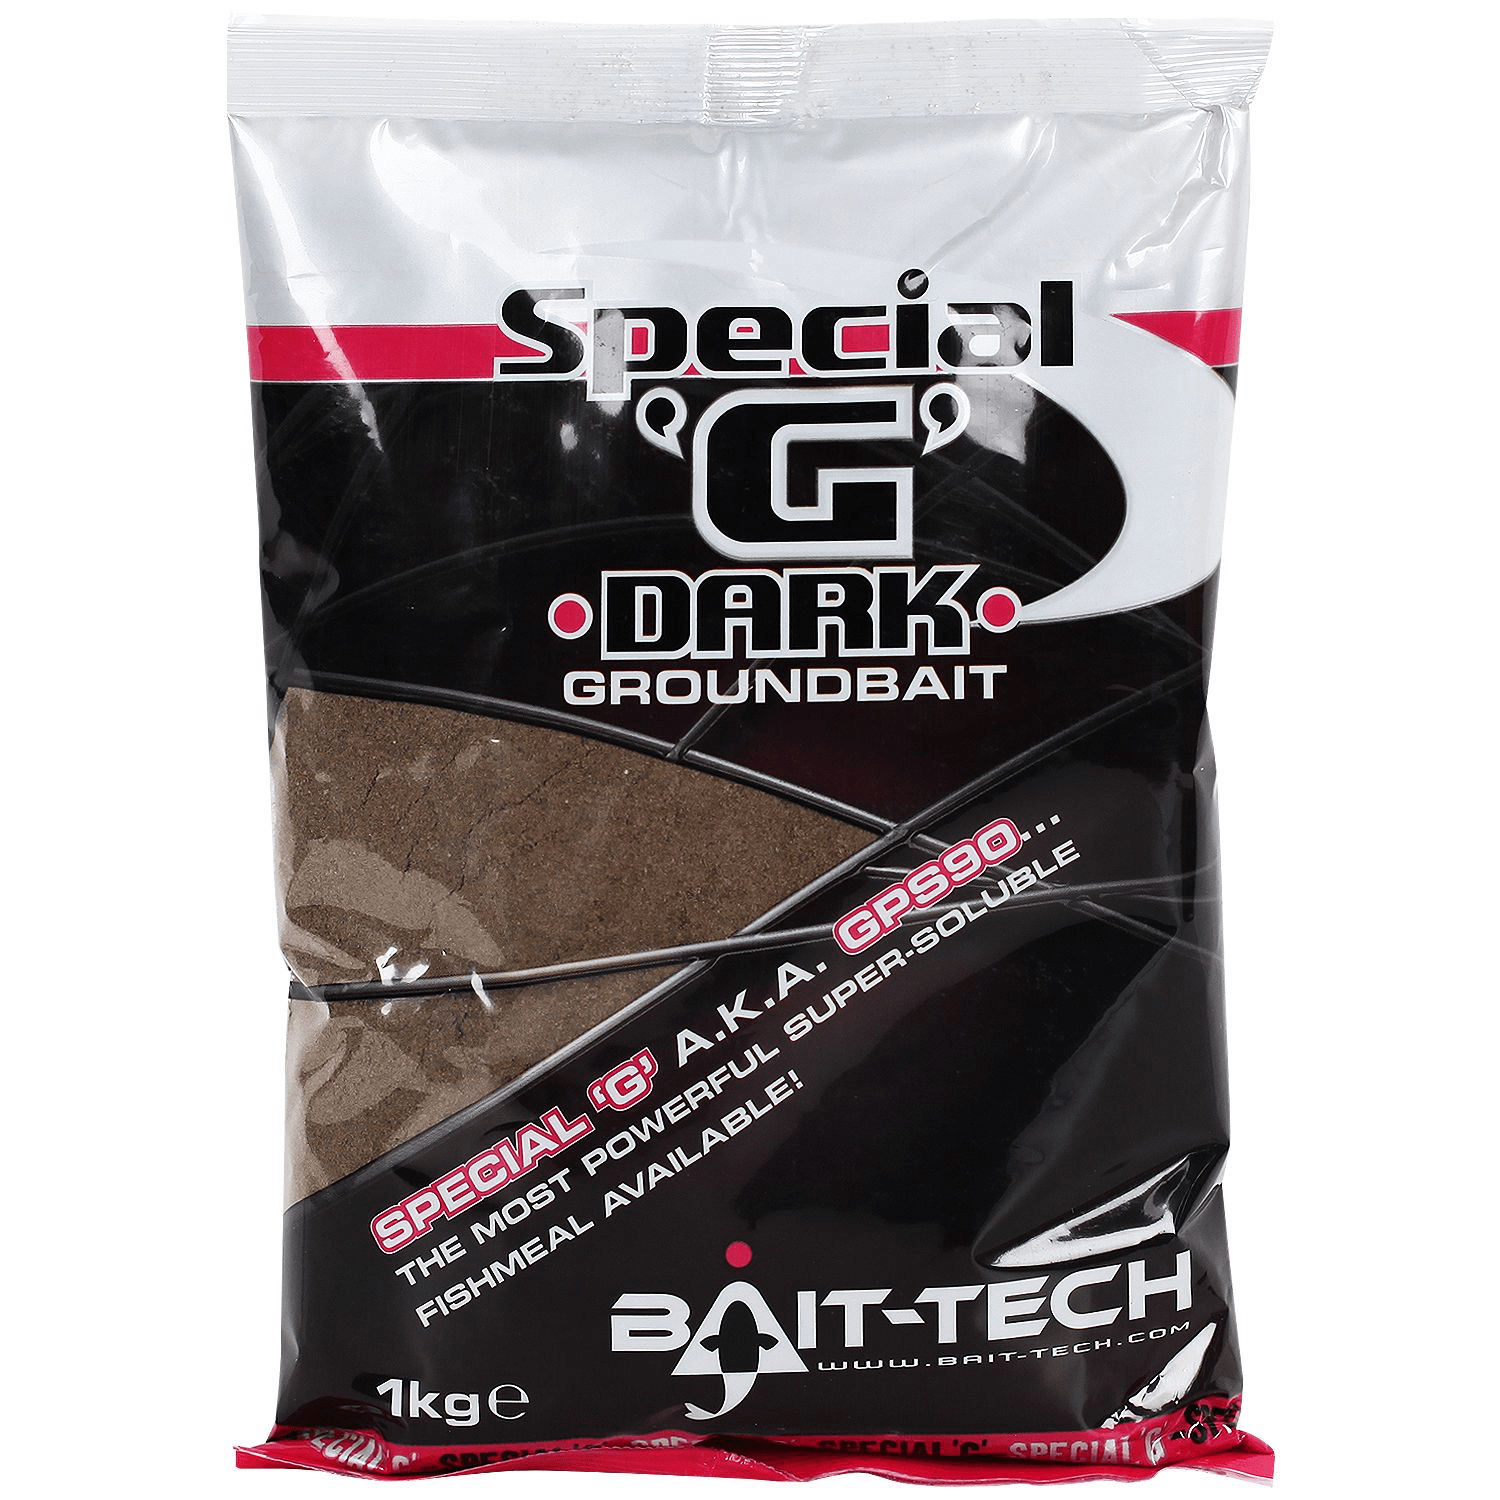 bait-tech special g groundbait dark